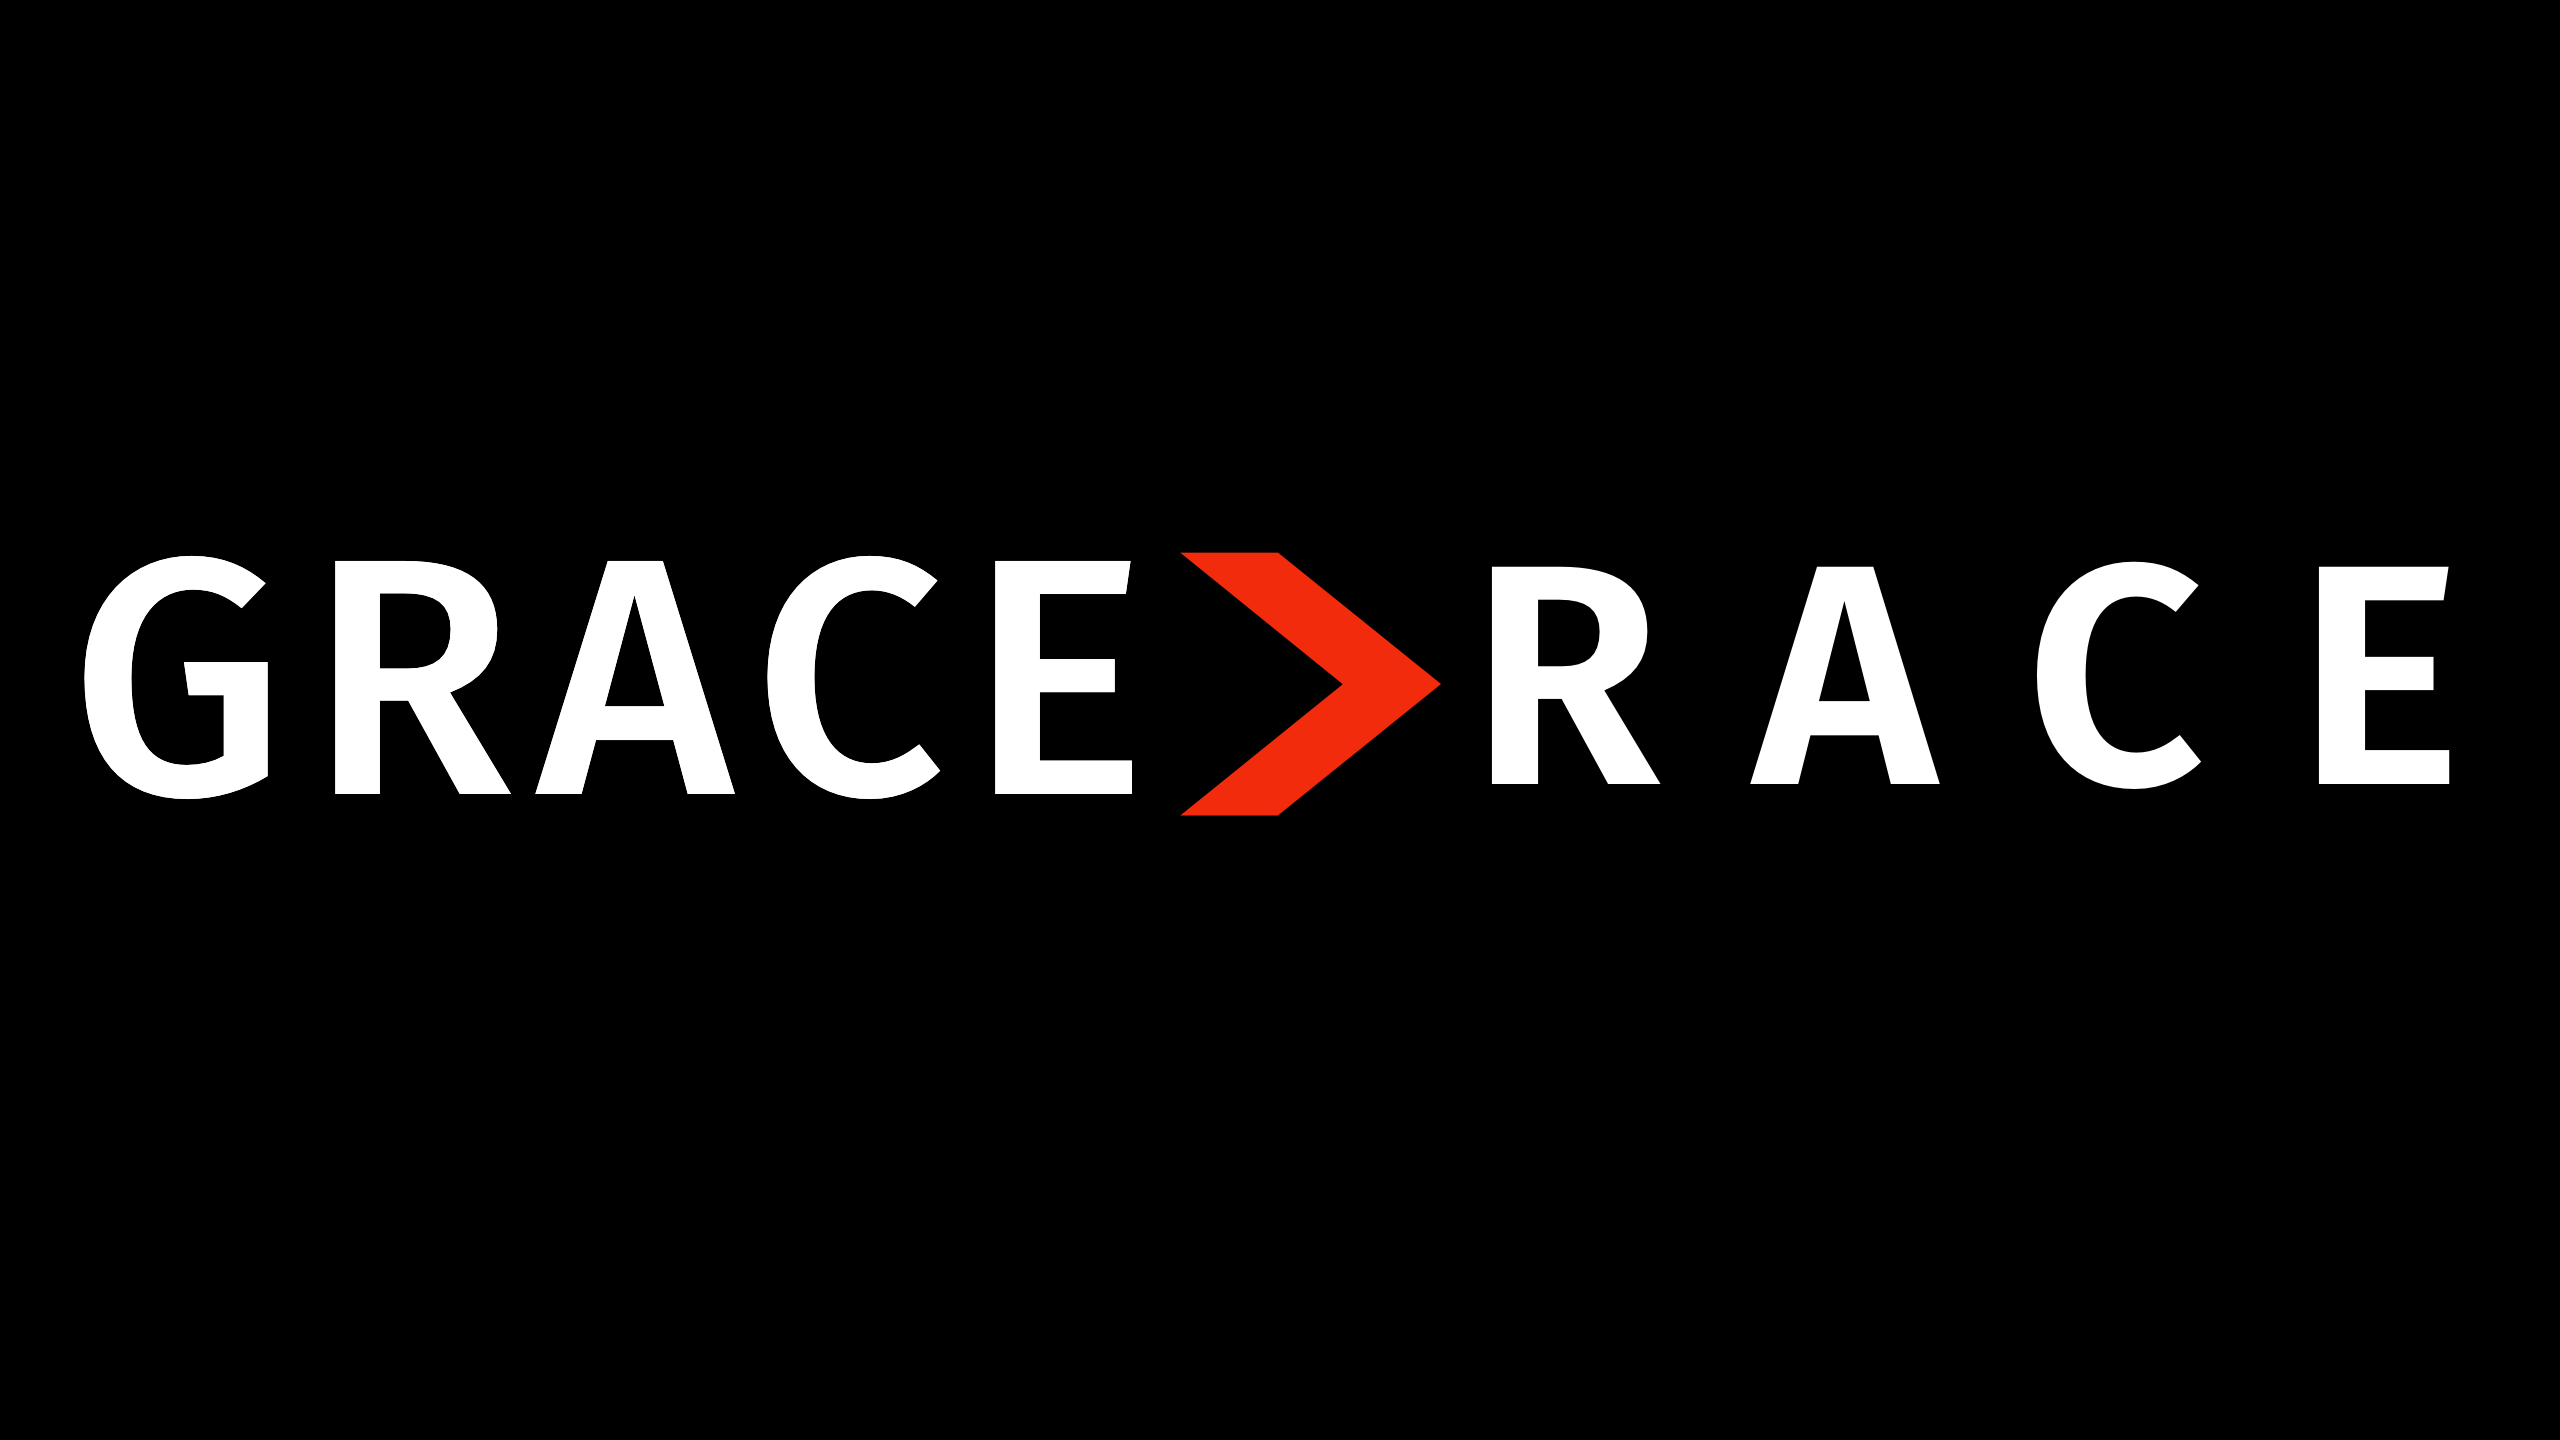 Grace > Race Panel Discussion